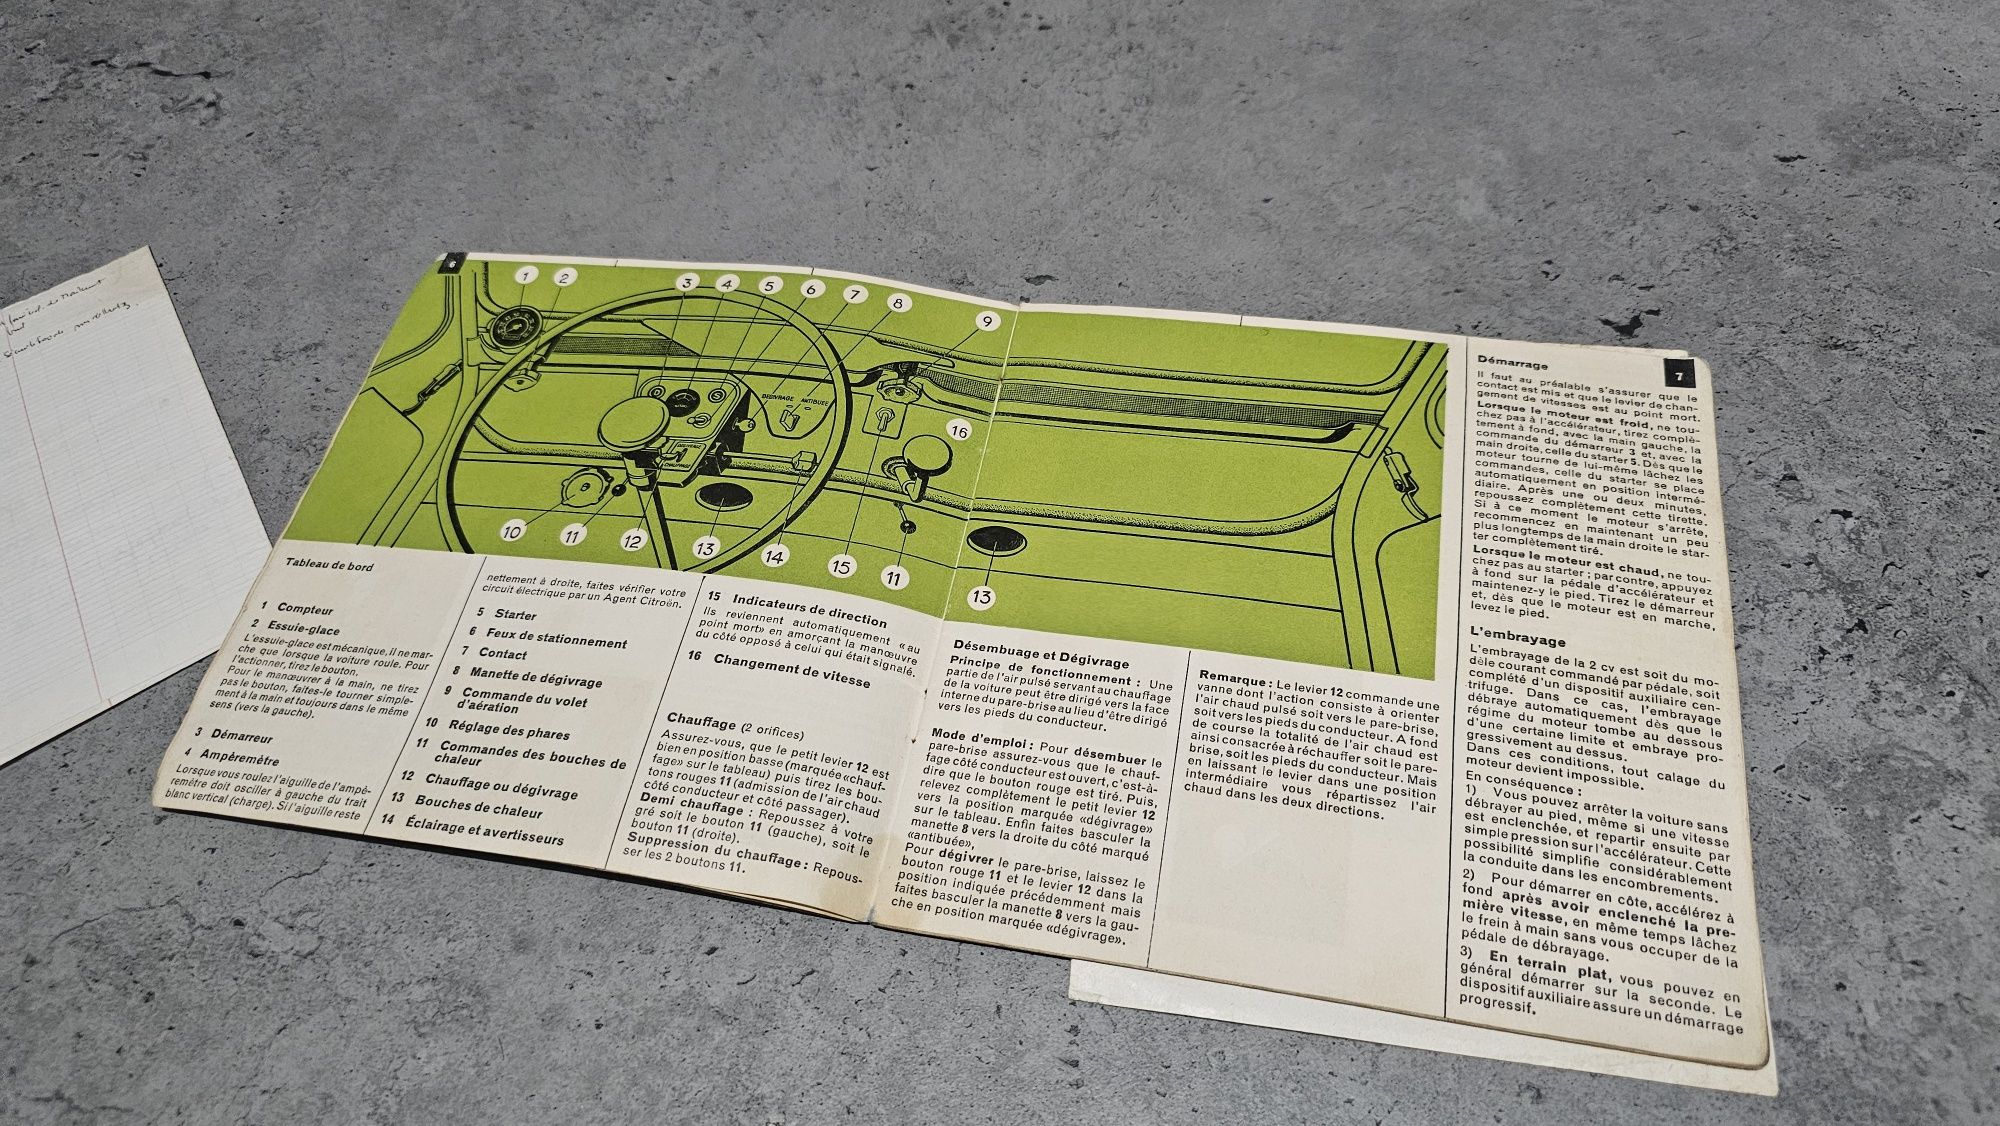 Instrukcja obsługi Citroen 2CV,1961